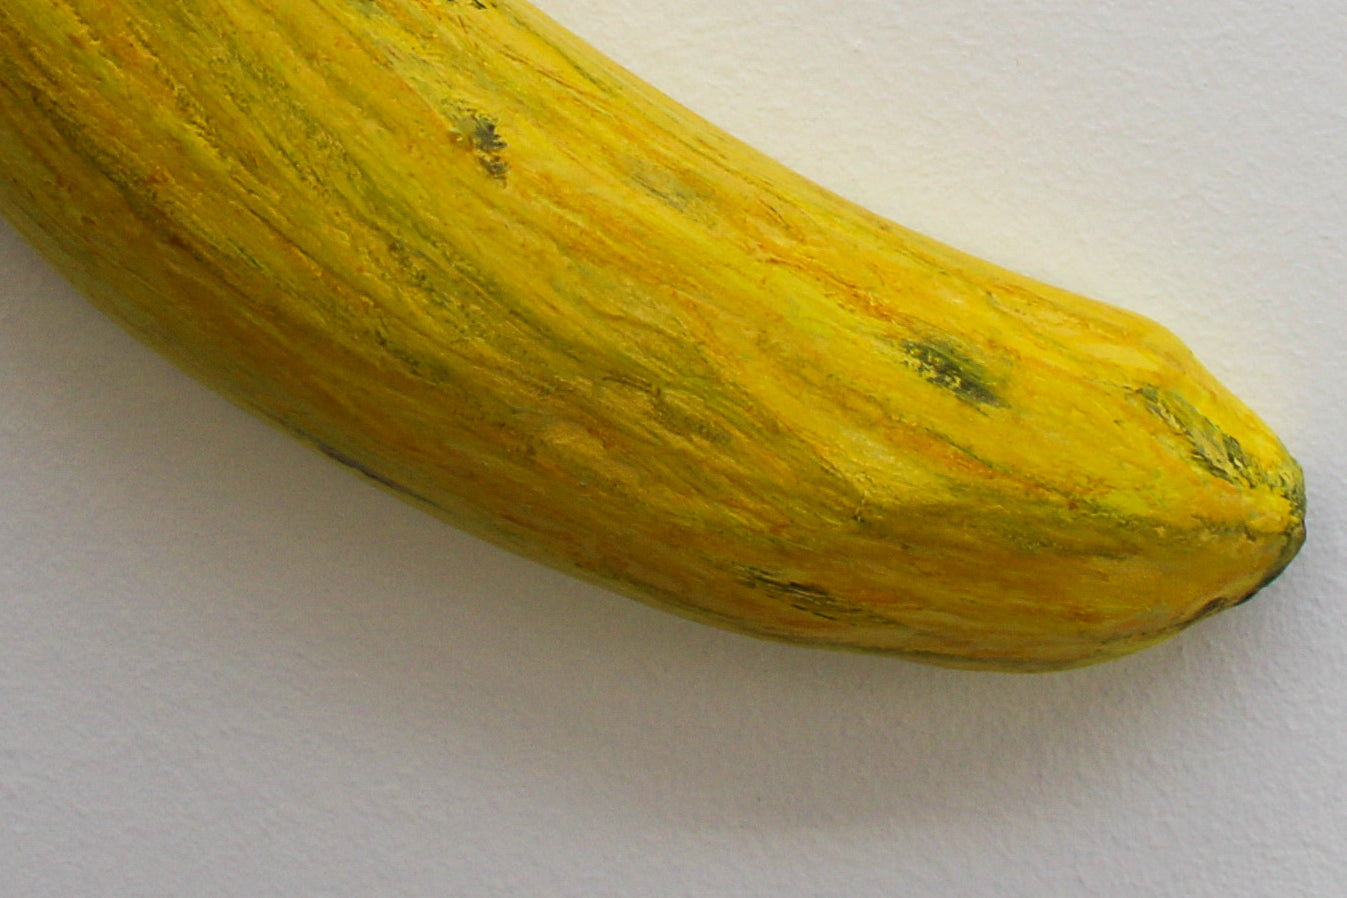 Karema Munassar, Banana